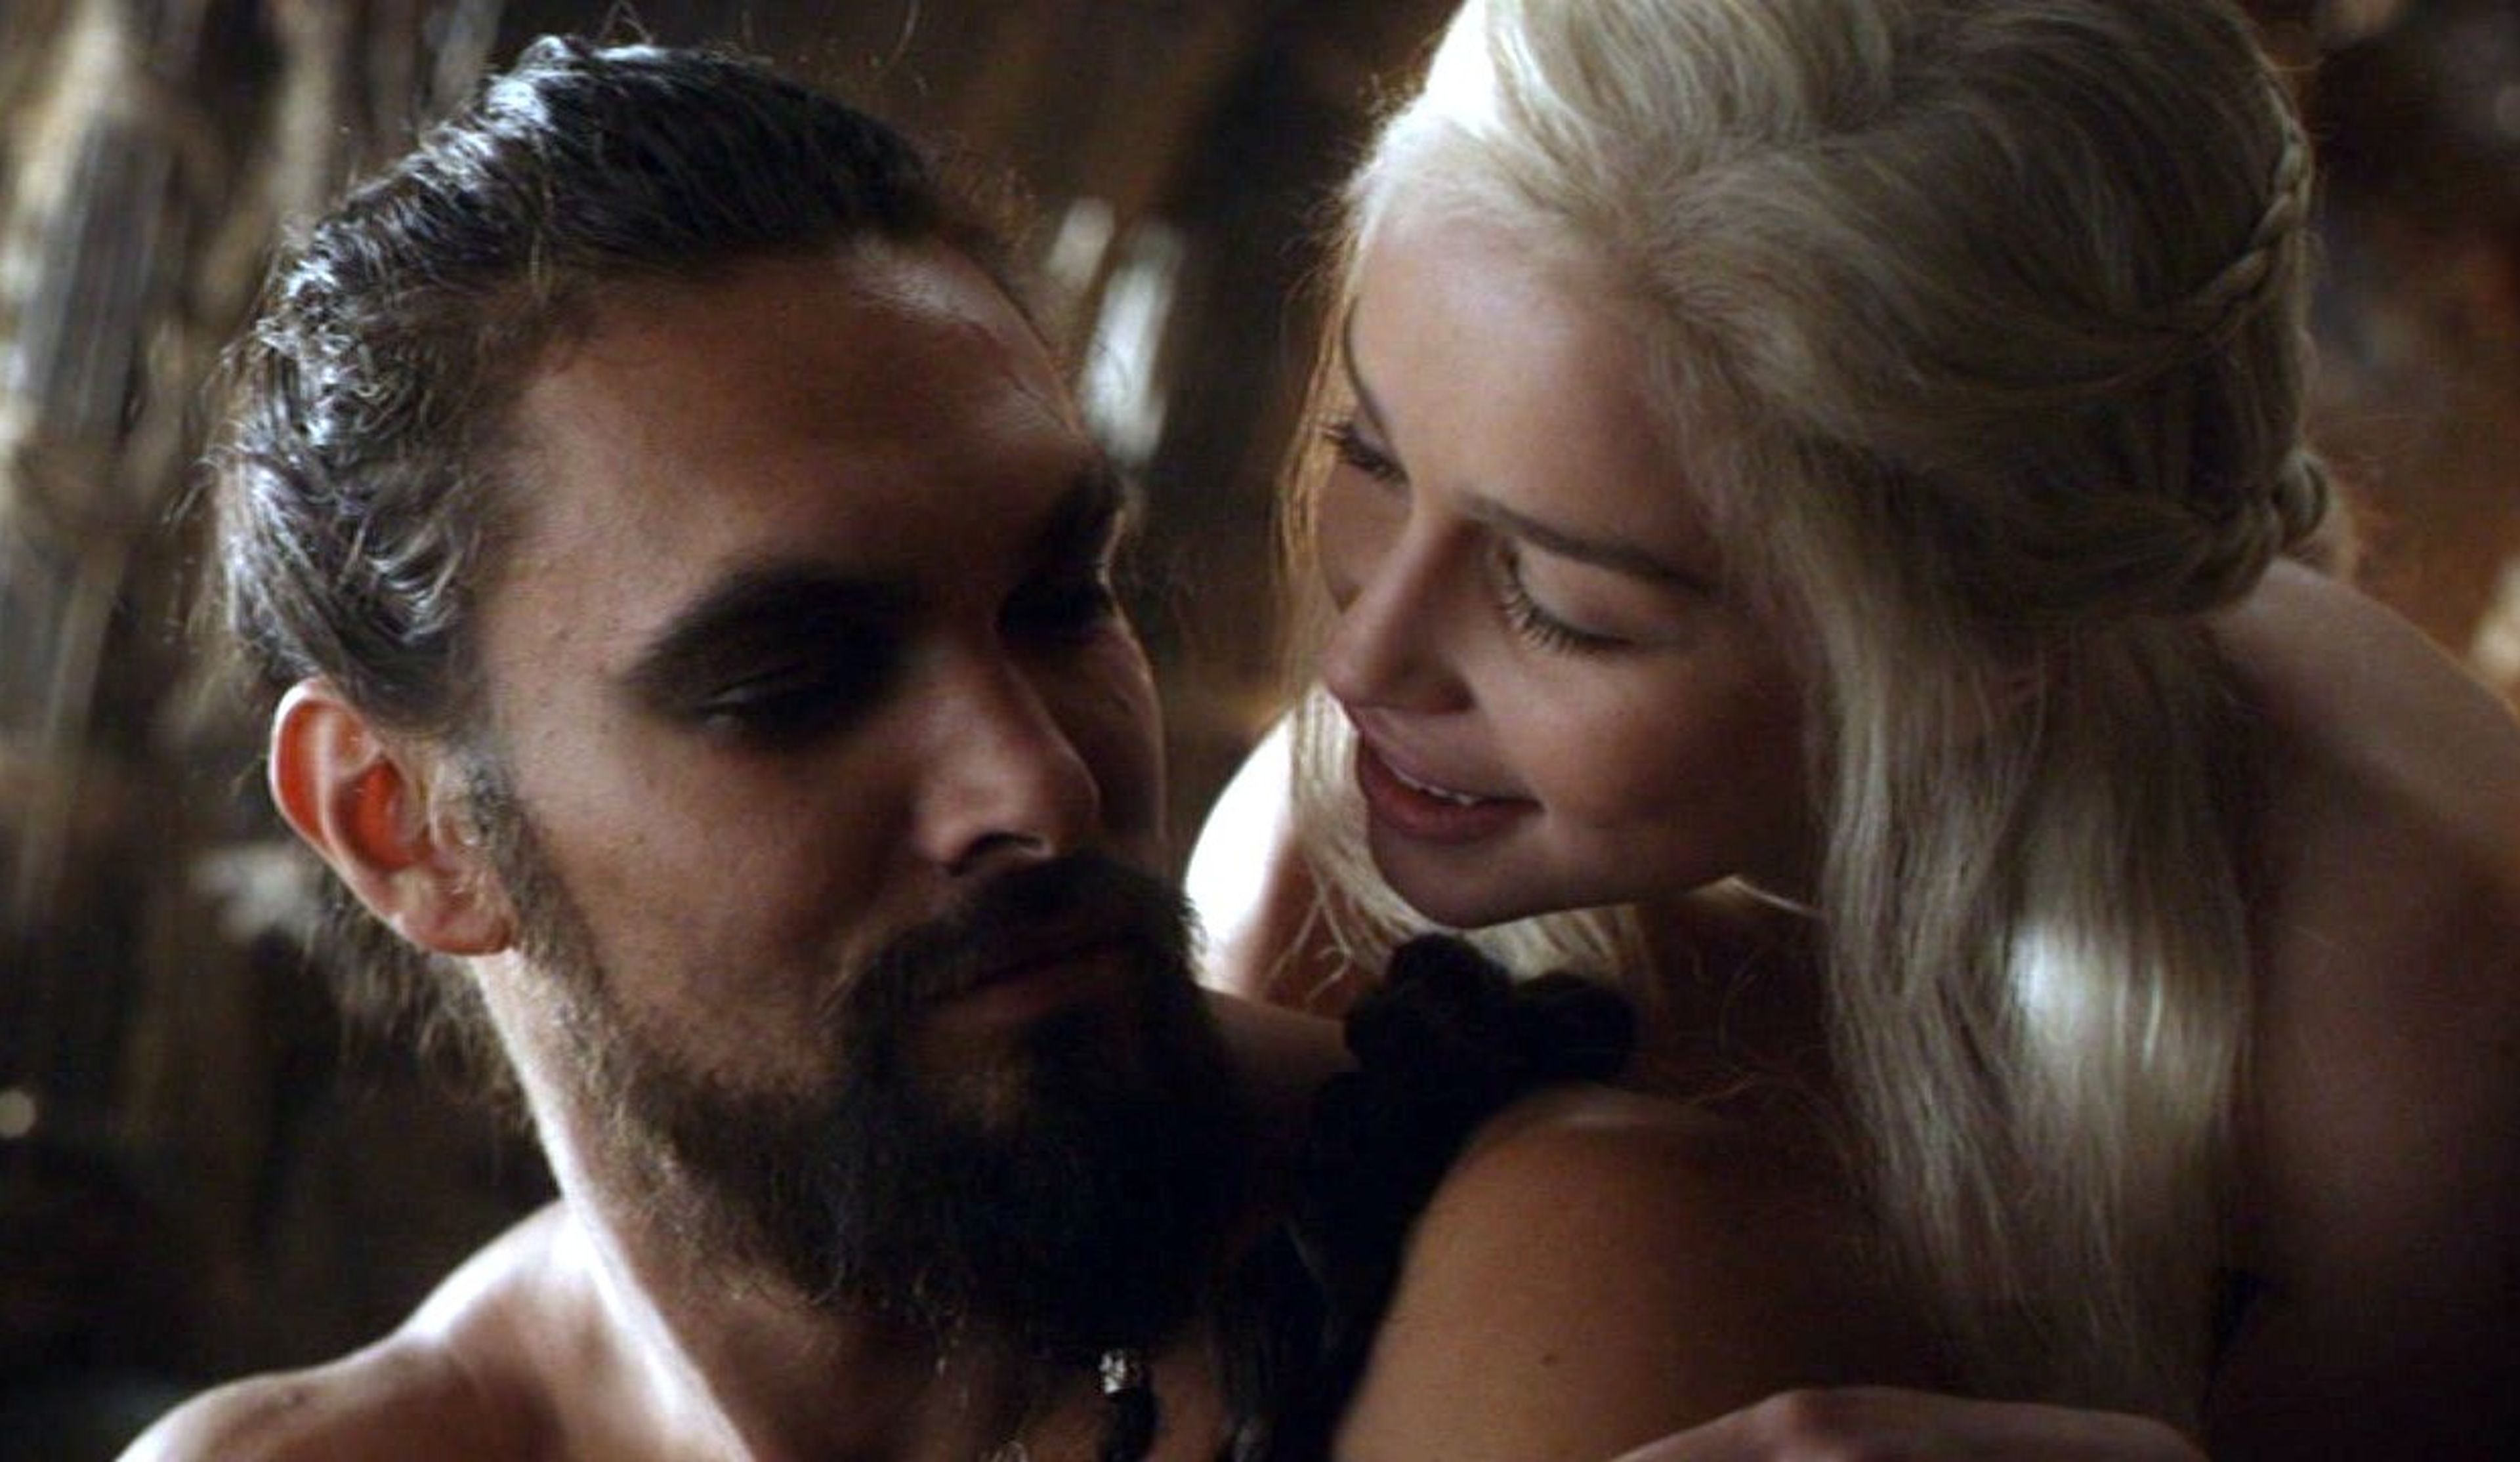 La noche de bodas de Daenerys y Khal Drogo es muy diferente